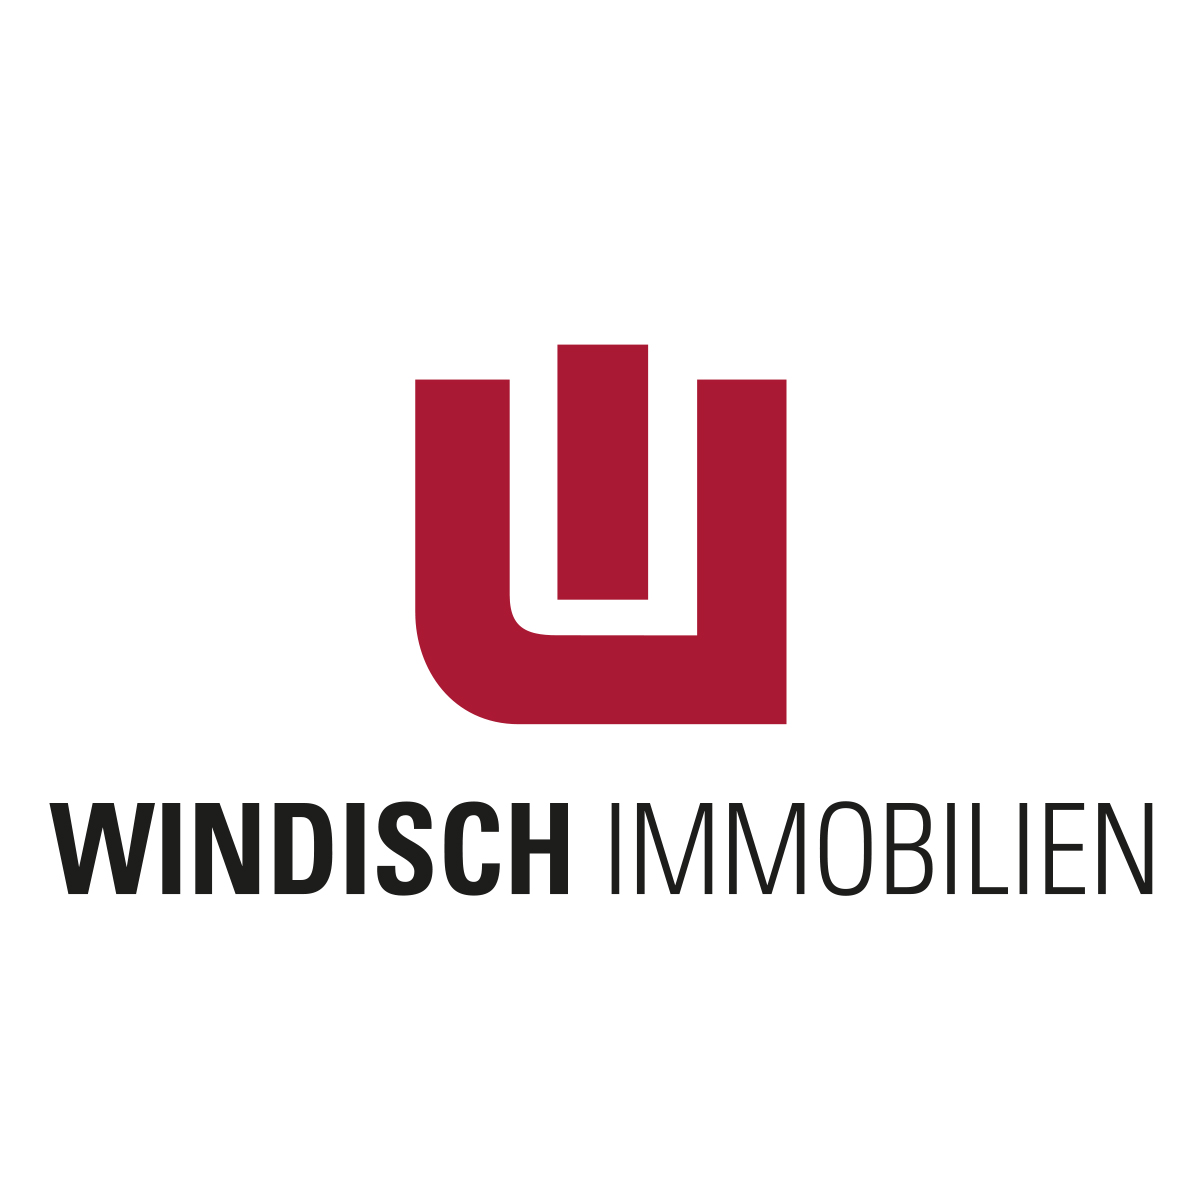 WINDISCH IMMOBILIEN in Gröbenzell - Logo